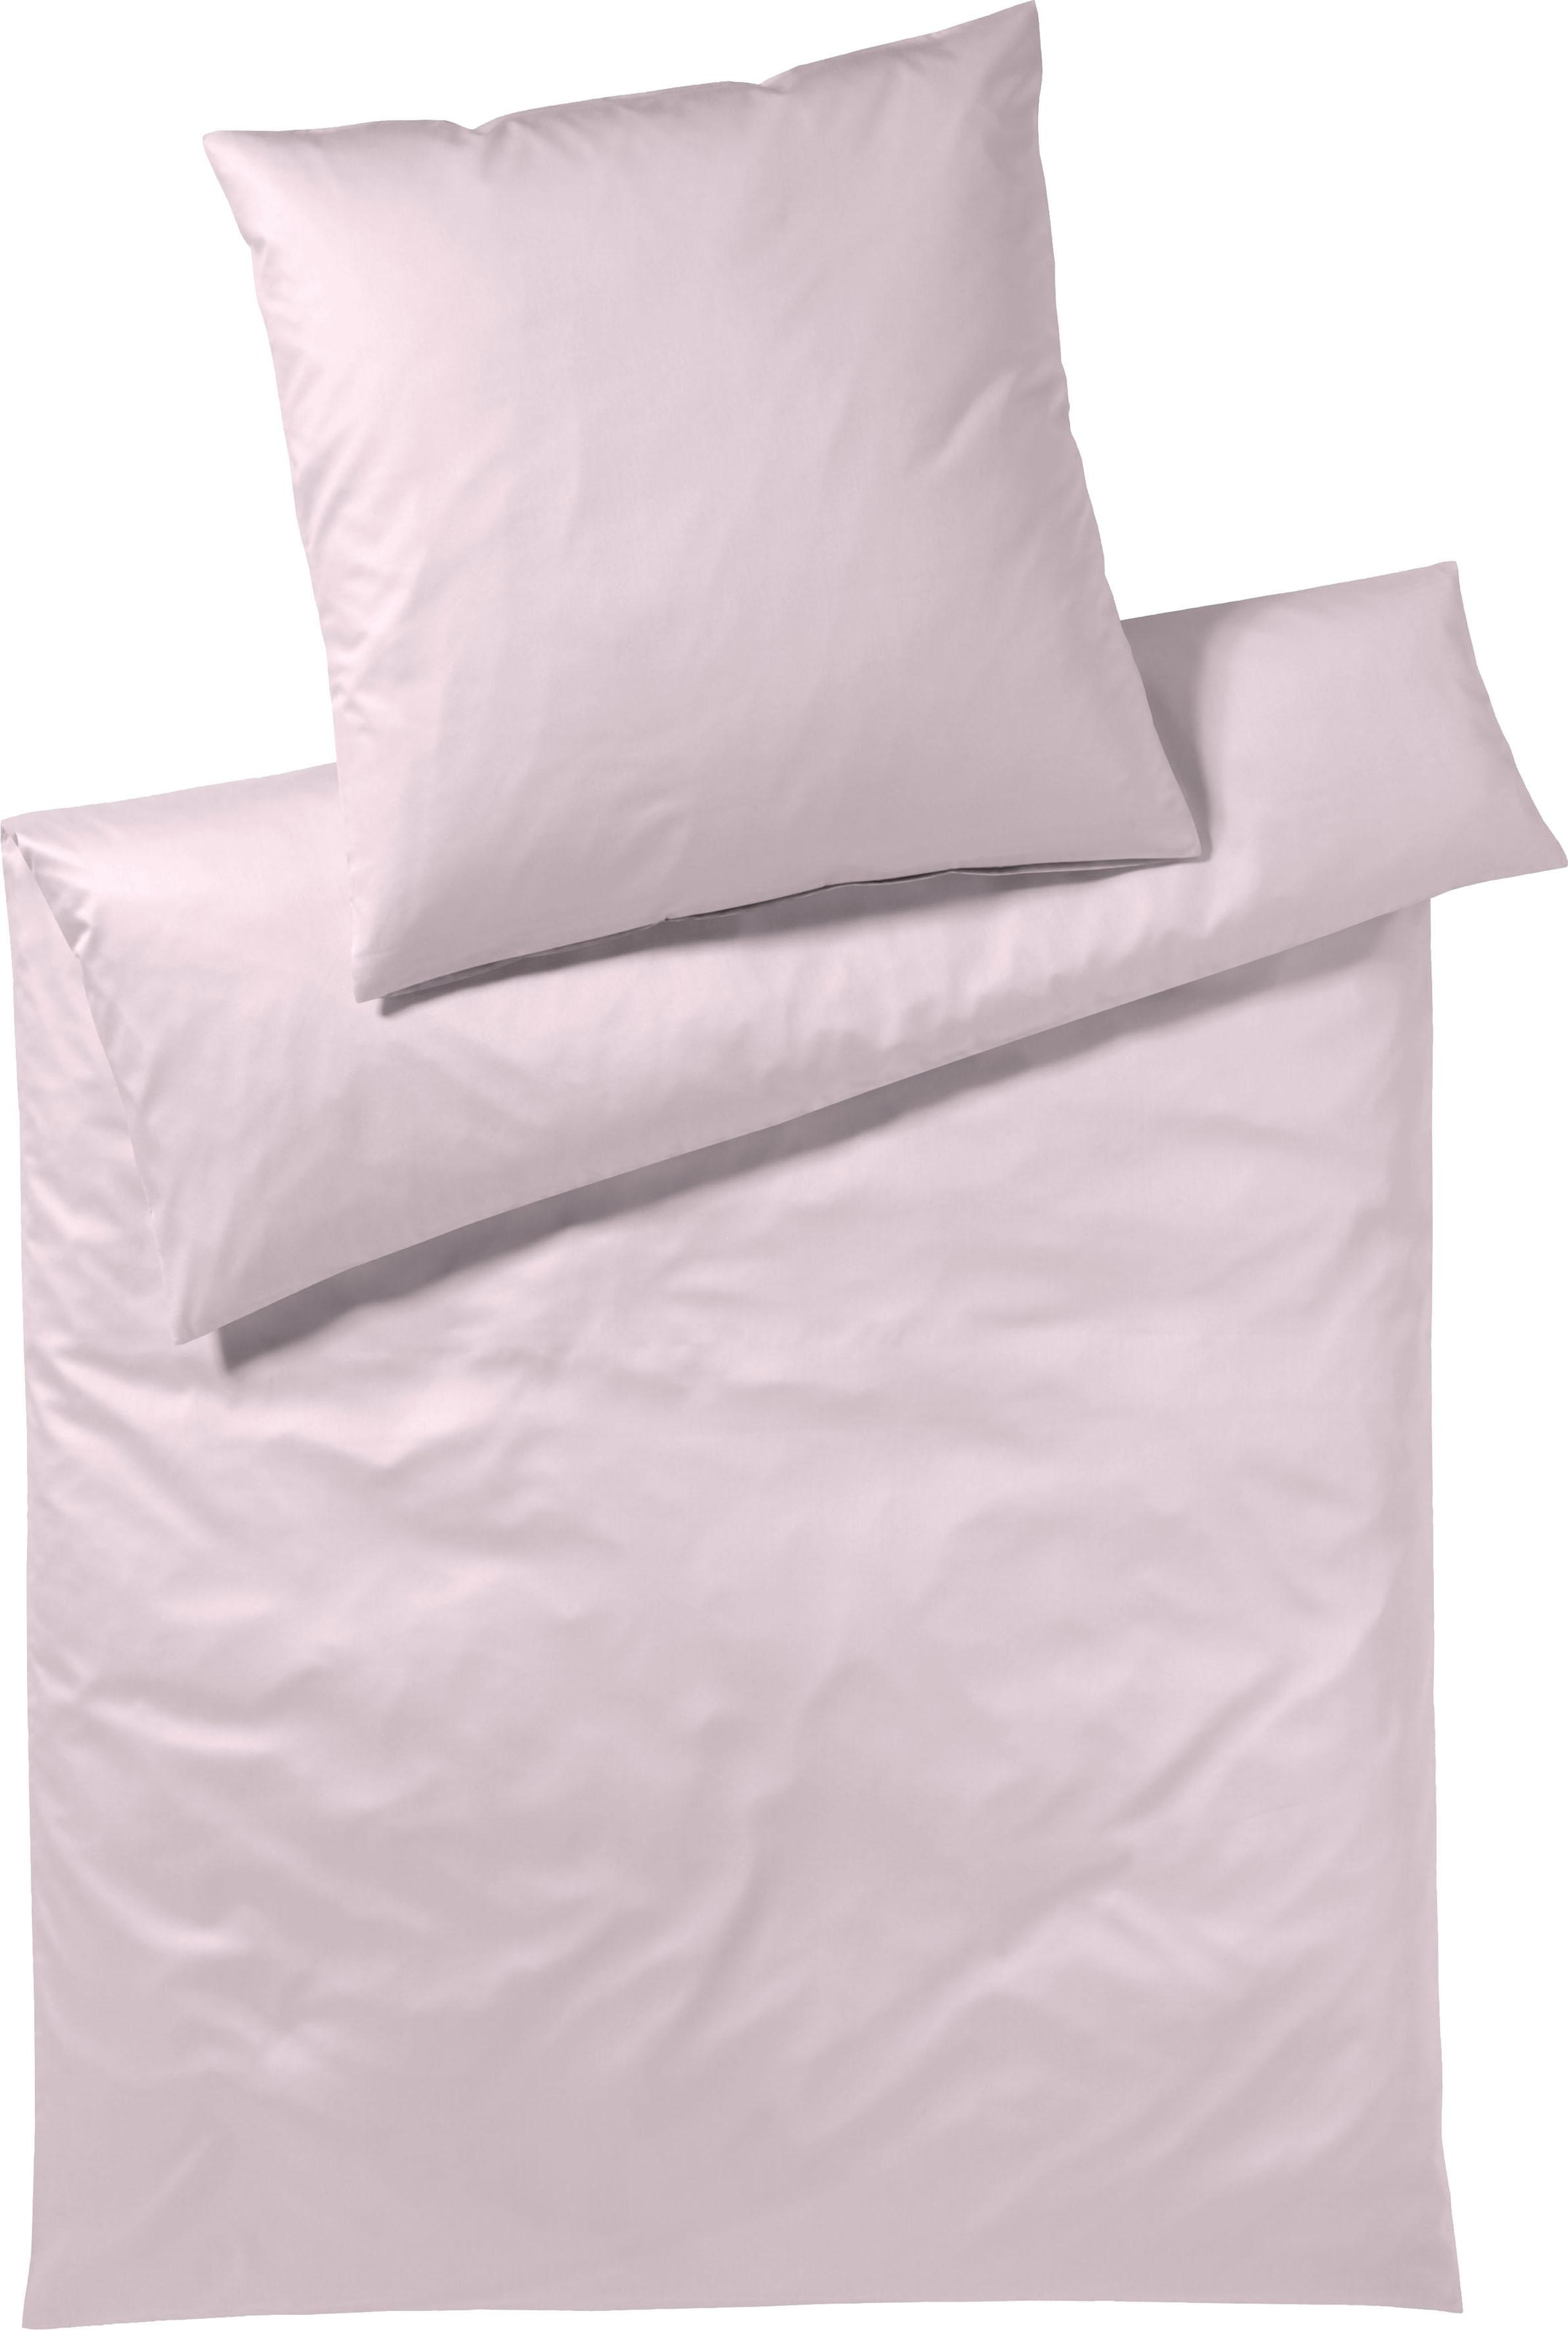 Elegante Bettwäsche "Solid in Mako Satin und Mako Jersey Qualität, 100% Baumwolle, Bett- und Kopfkissenbezug mit Reißver